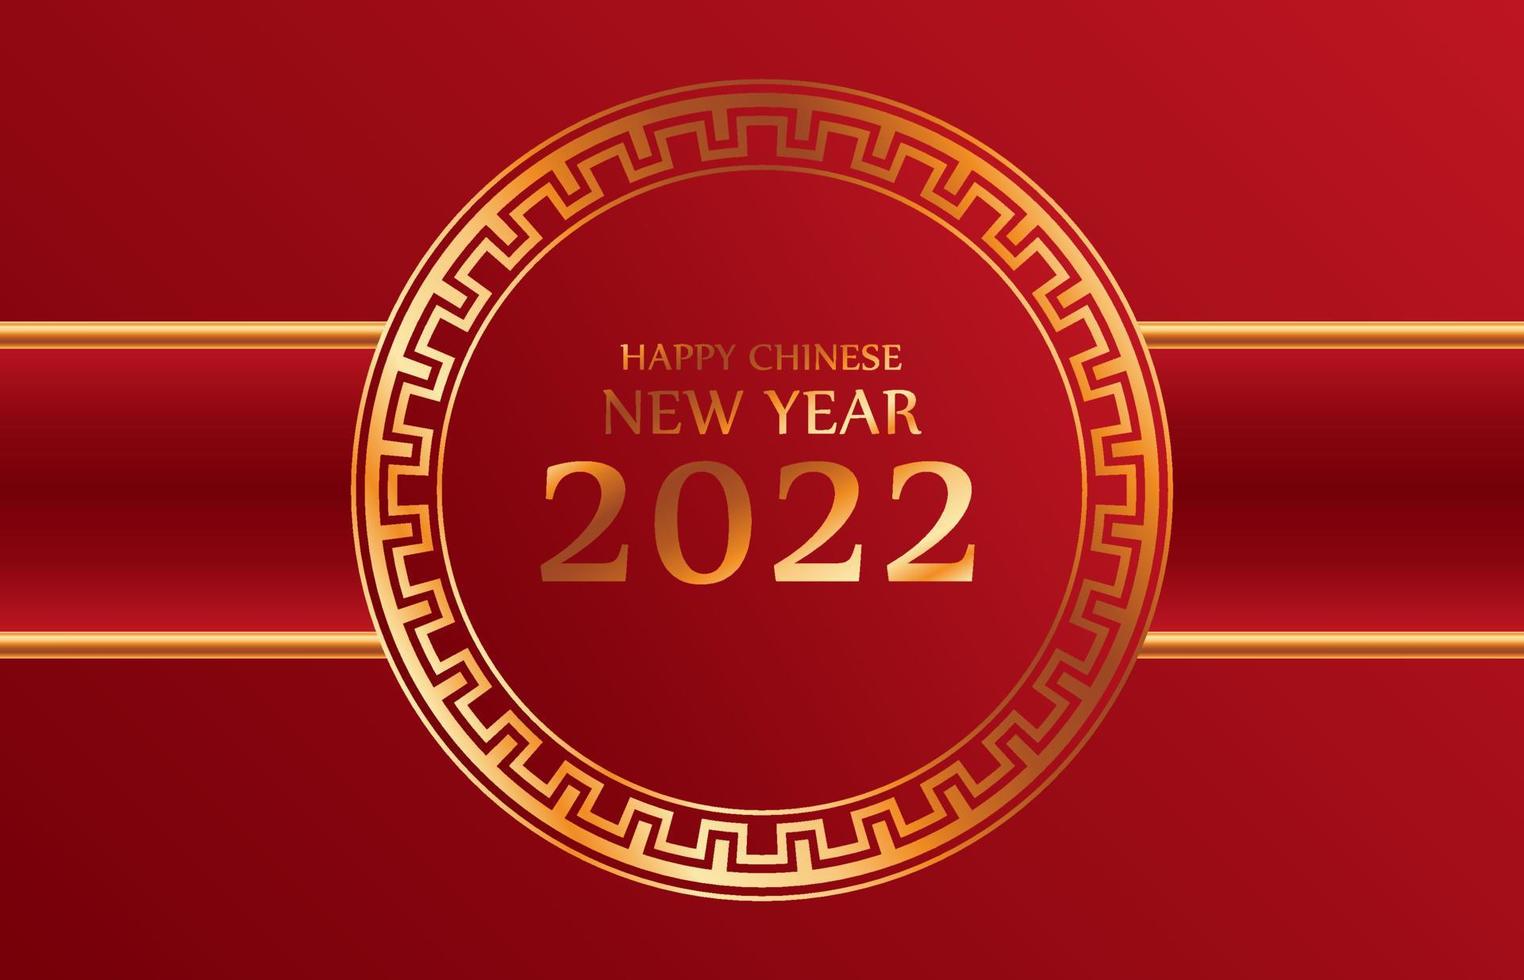 felice anno nuovo cinese 2022 per feste e celebrazioni decorativo classico sfondo rosso festivo e cornice dorata con spazio per il messaggio isolato vettore